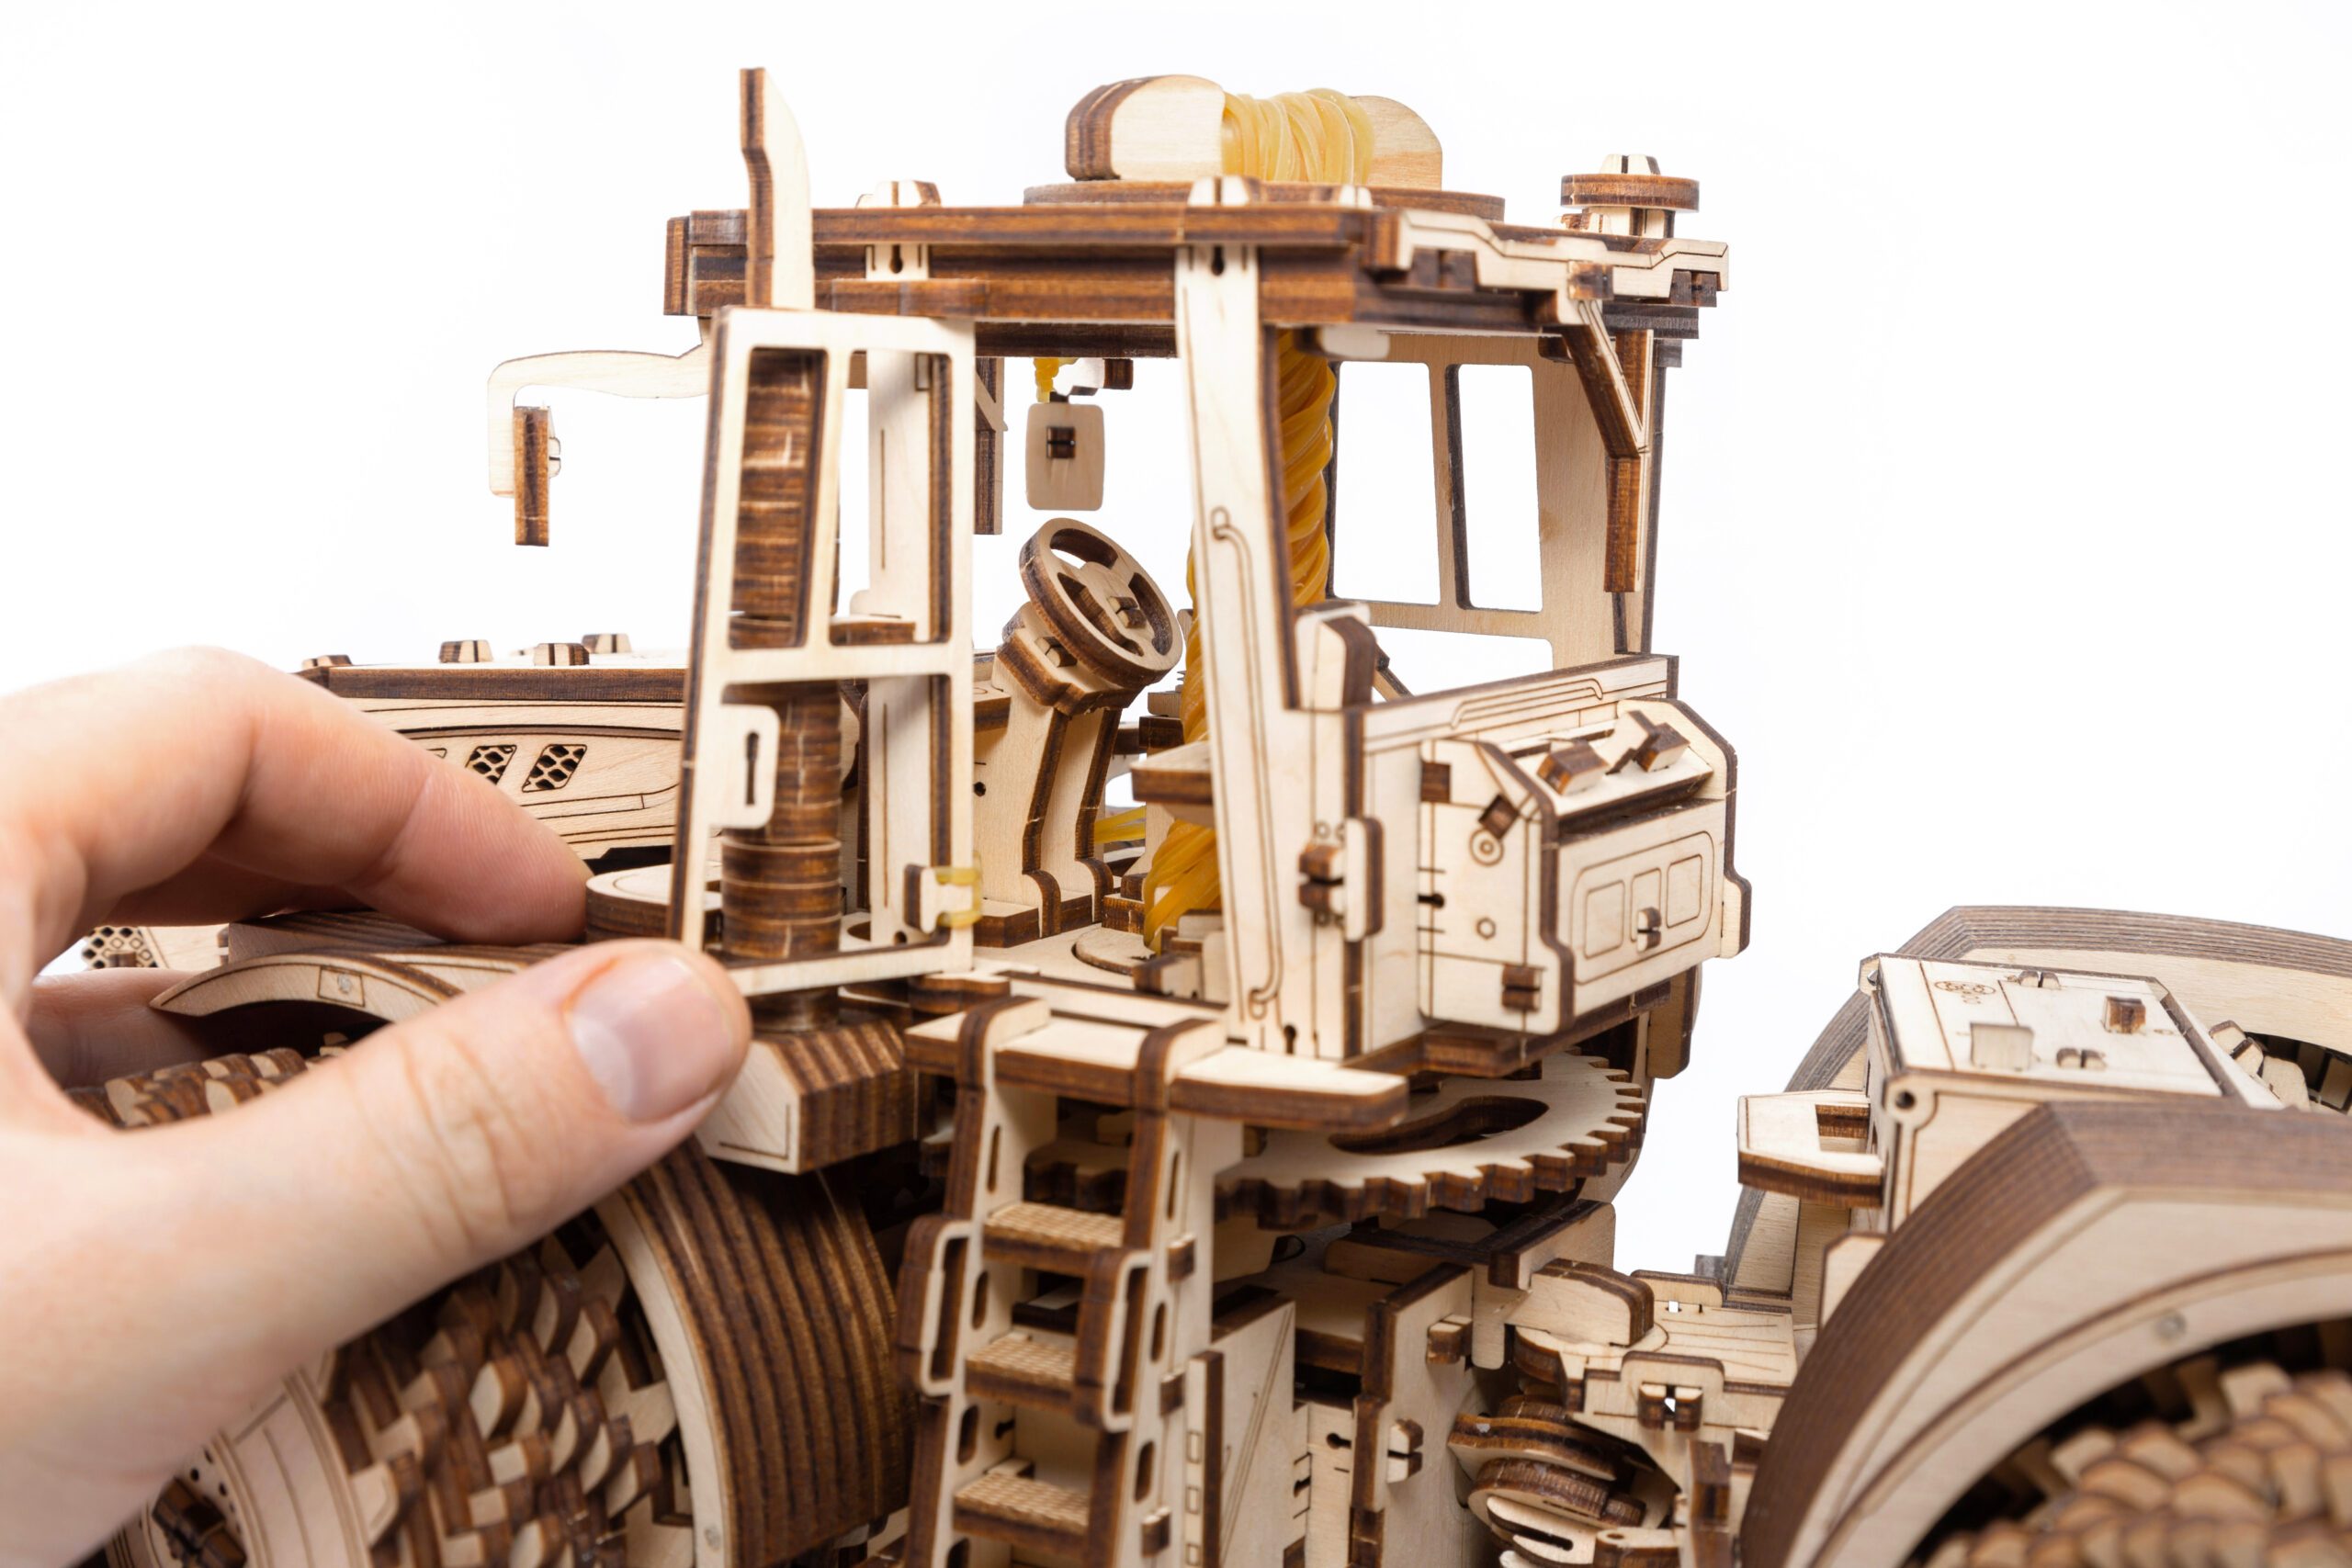 Kirovets K-7M Sparpaket Traktor + Trailer Eco Wood Art Wooden Models 